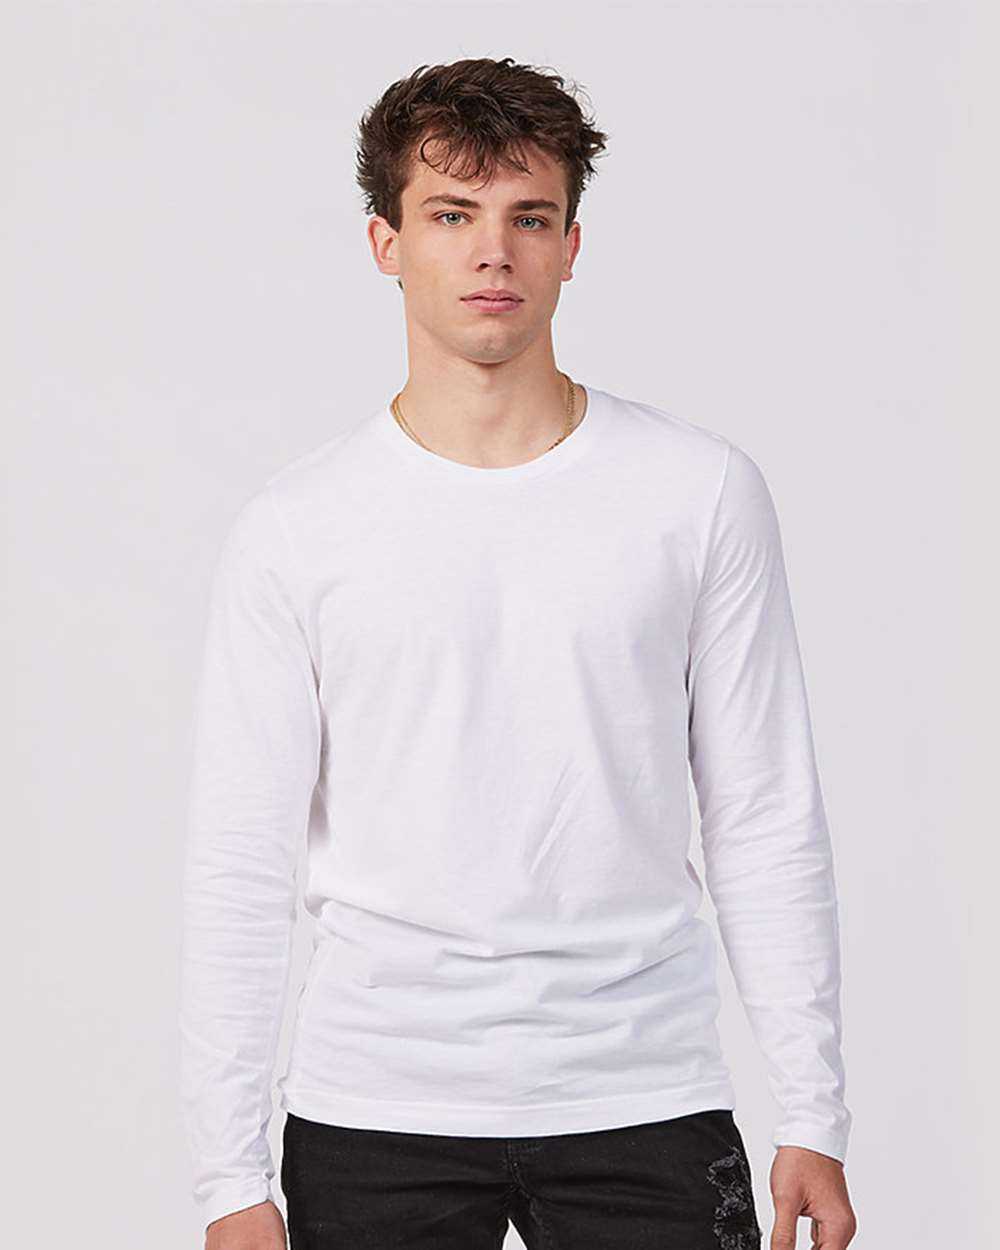 Tultex 591 Unisex Premium Cotton Long Sleeve T-Shirt - White - HIT a Double